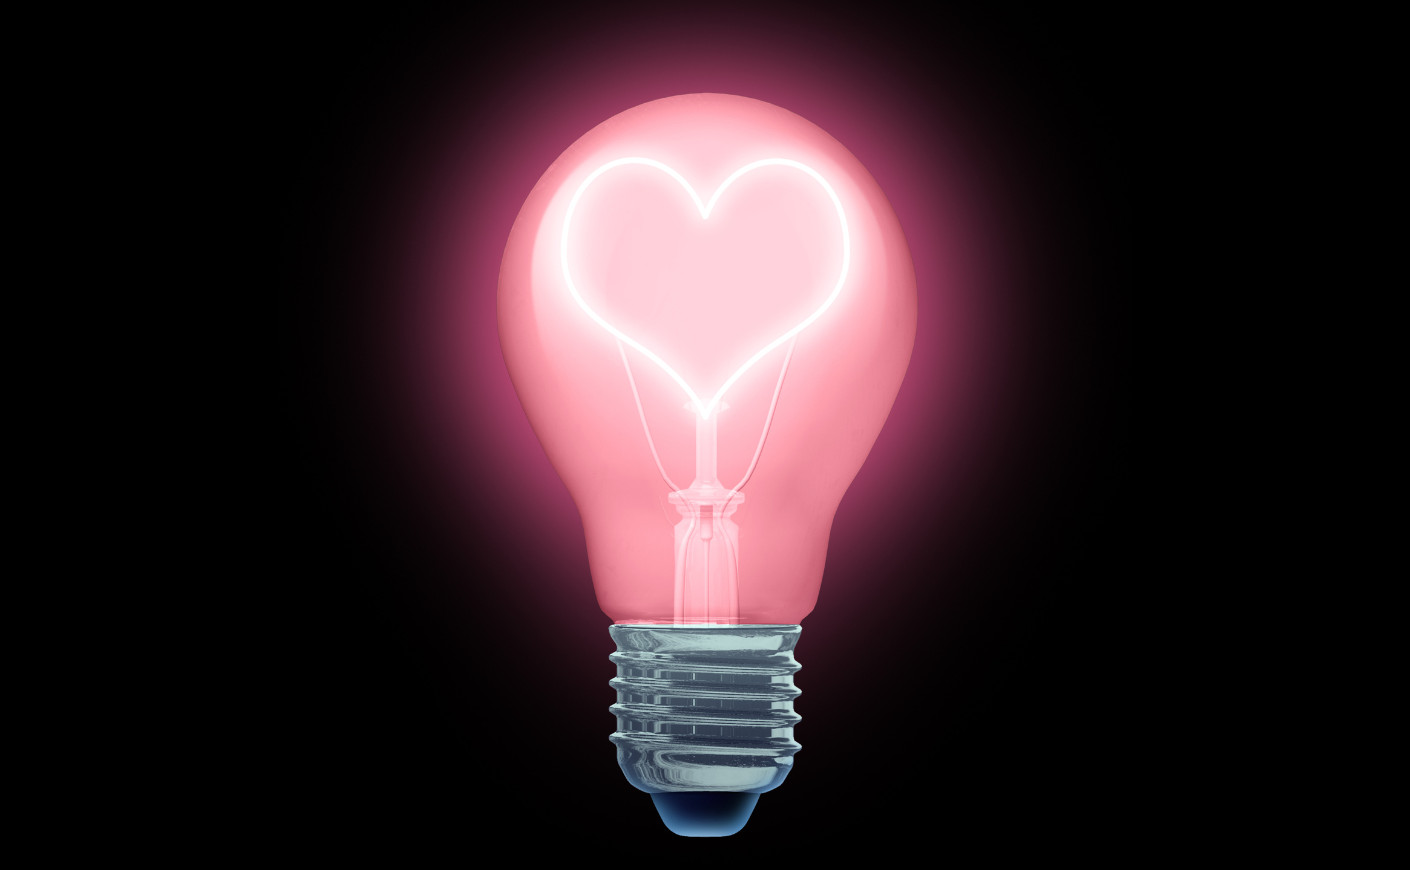 lightbulb with a heart inside it